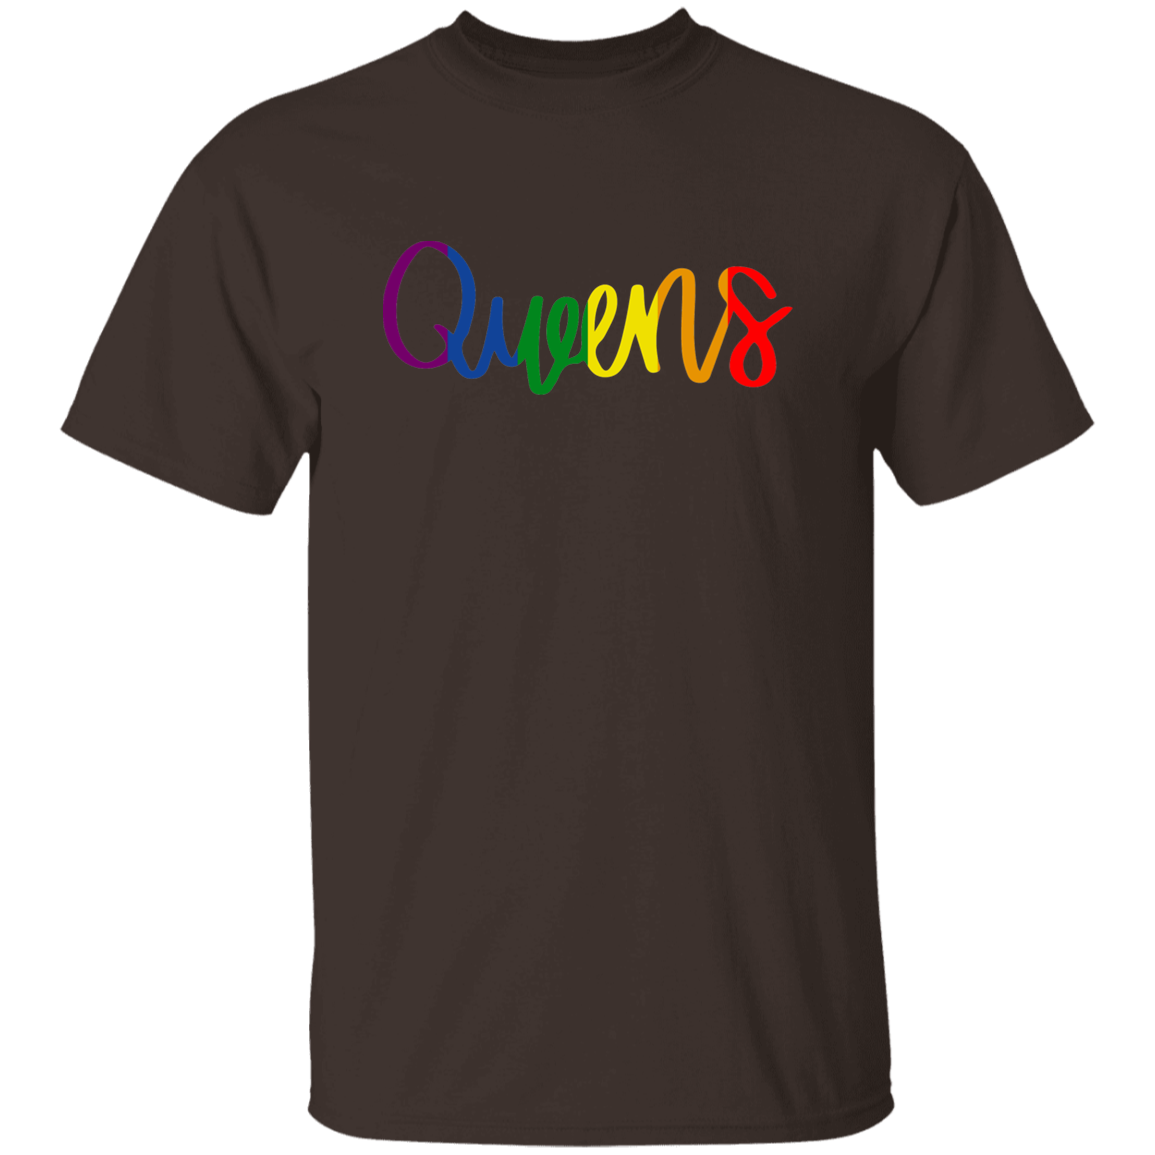 Queens 5.3 oz. T-Shirt